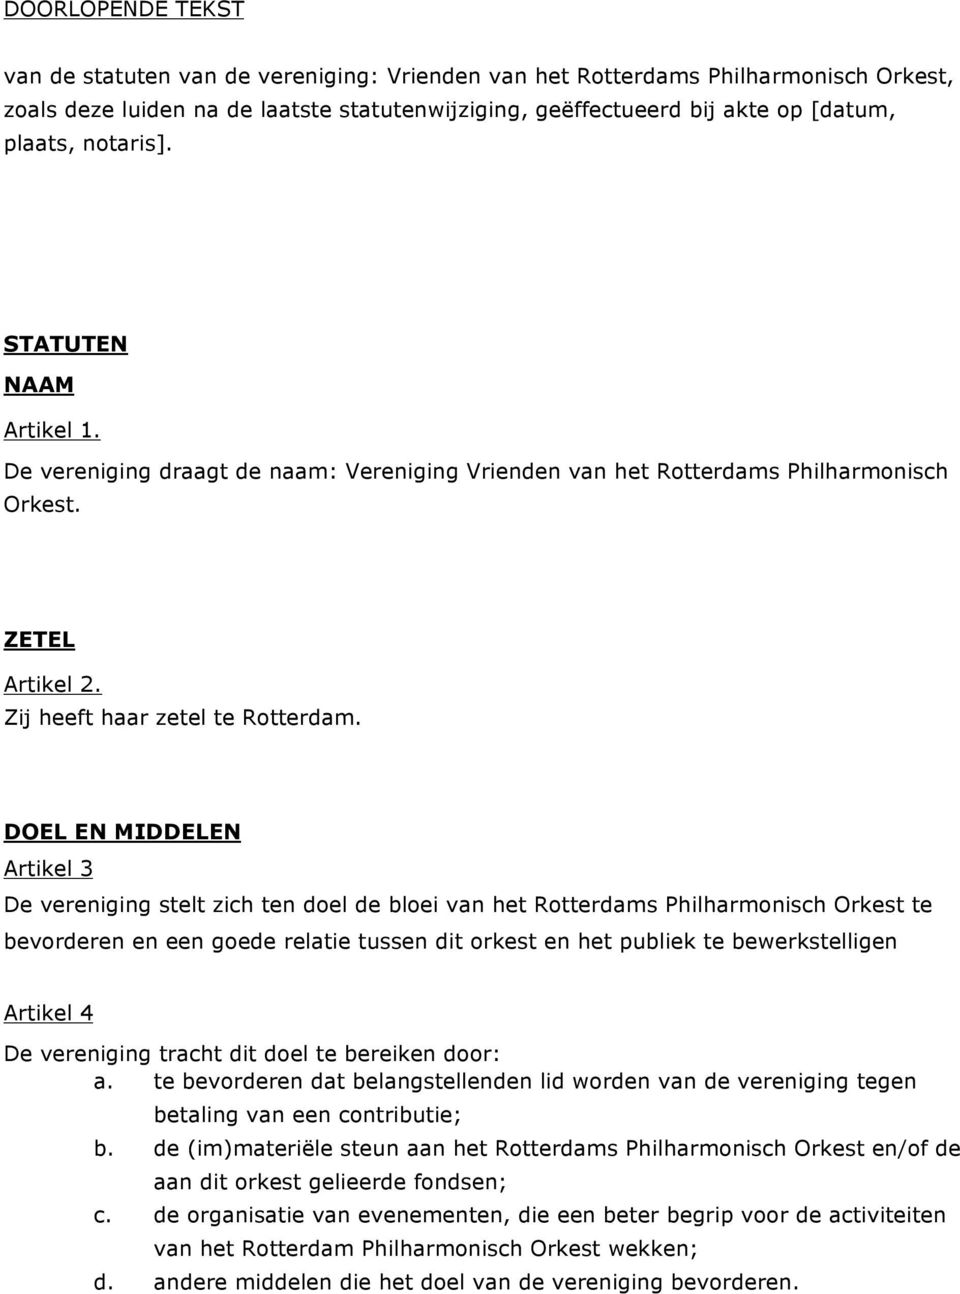 DOEL EN MIDDELEN Artikel 3 De vereniging stelt zich ten doel de bloei van het Rotterdams Philharmonisch Orkest te bevorderen en een goede relatie tussen dit orkest en het publiek te bewerkstelligen